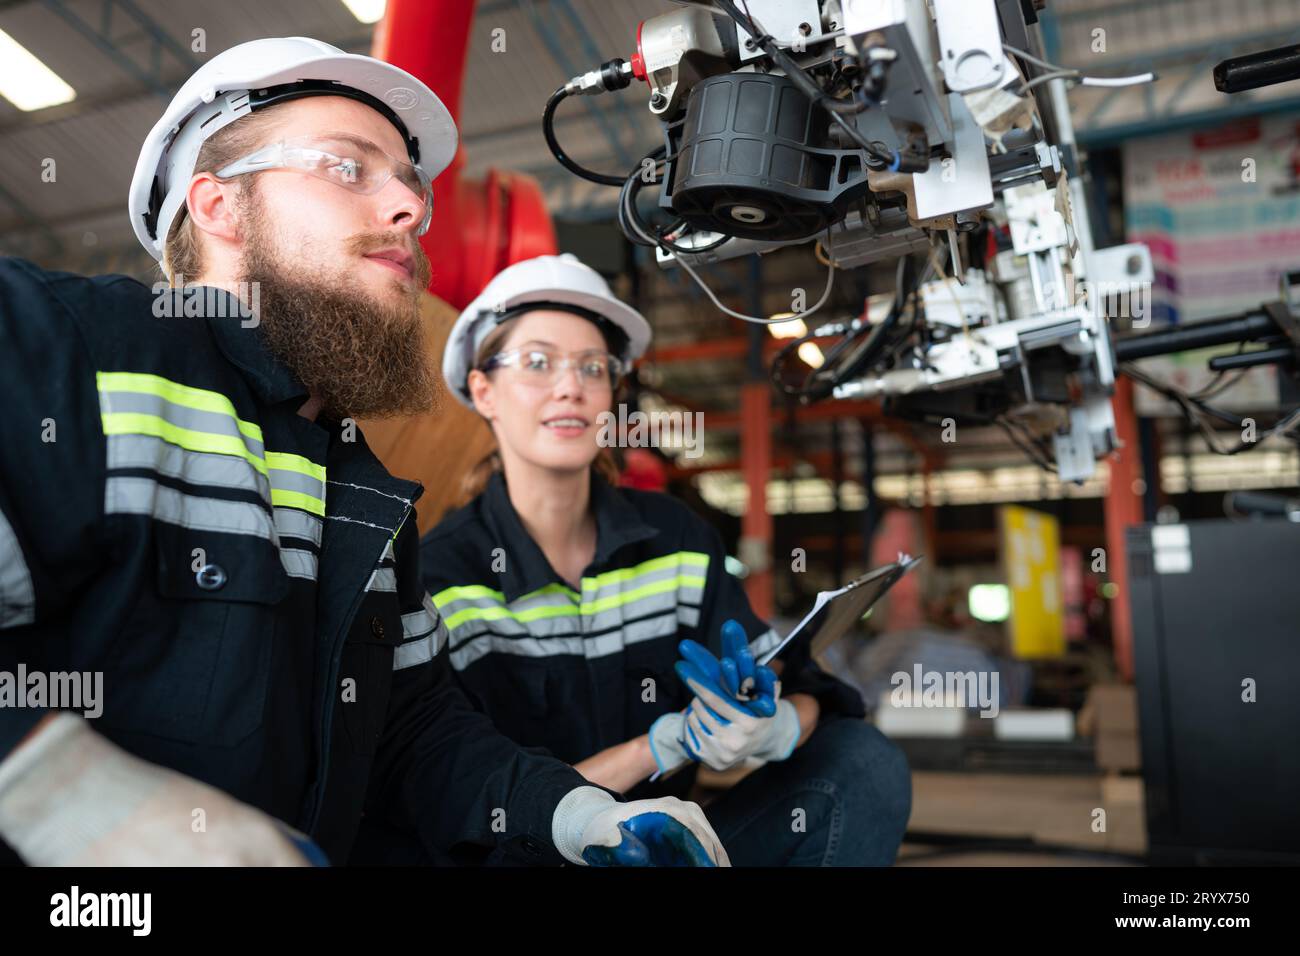 Elektroingenieur mit der Mission, ein elektrisches System für den Roboterarm zu installieren Stockfoto